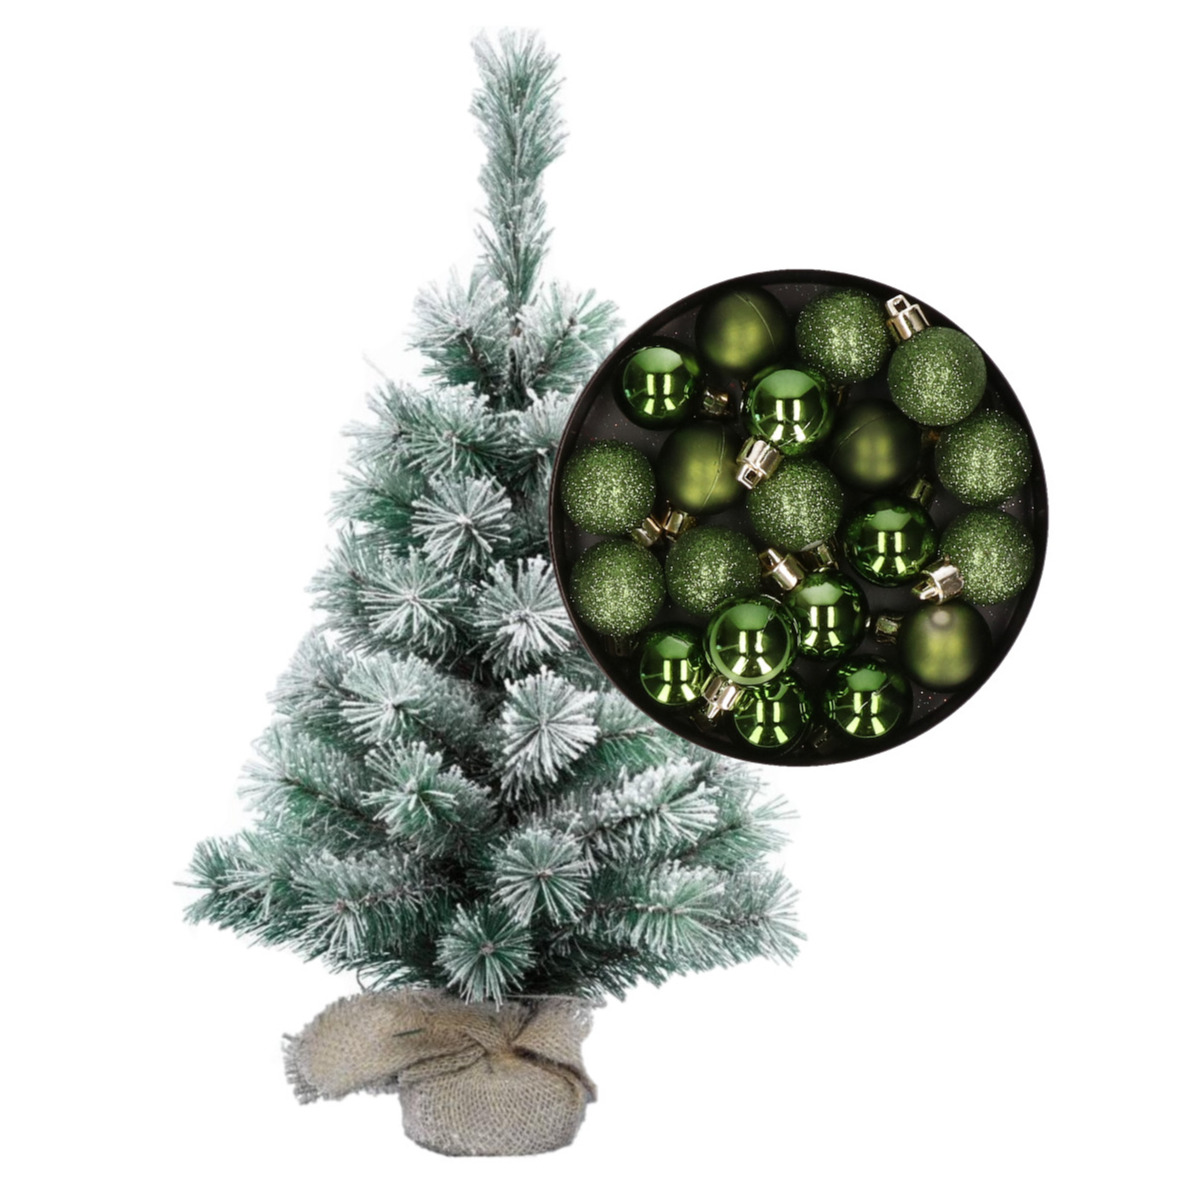 Besneeuwde mini kerstboom-kunst kerstboom 35 cm met kerstballen groen